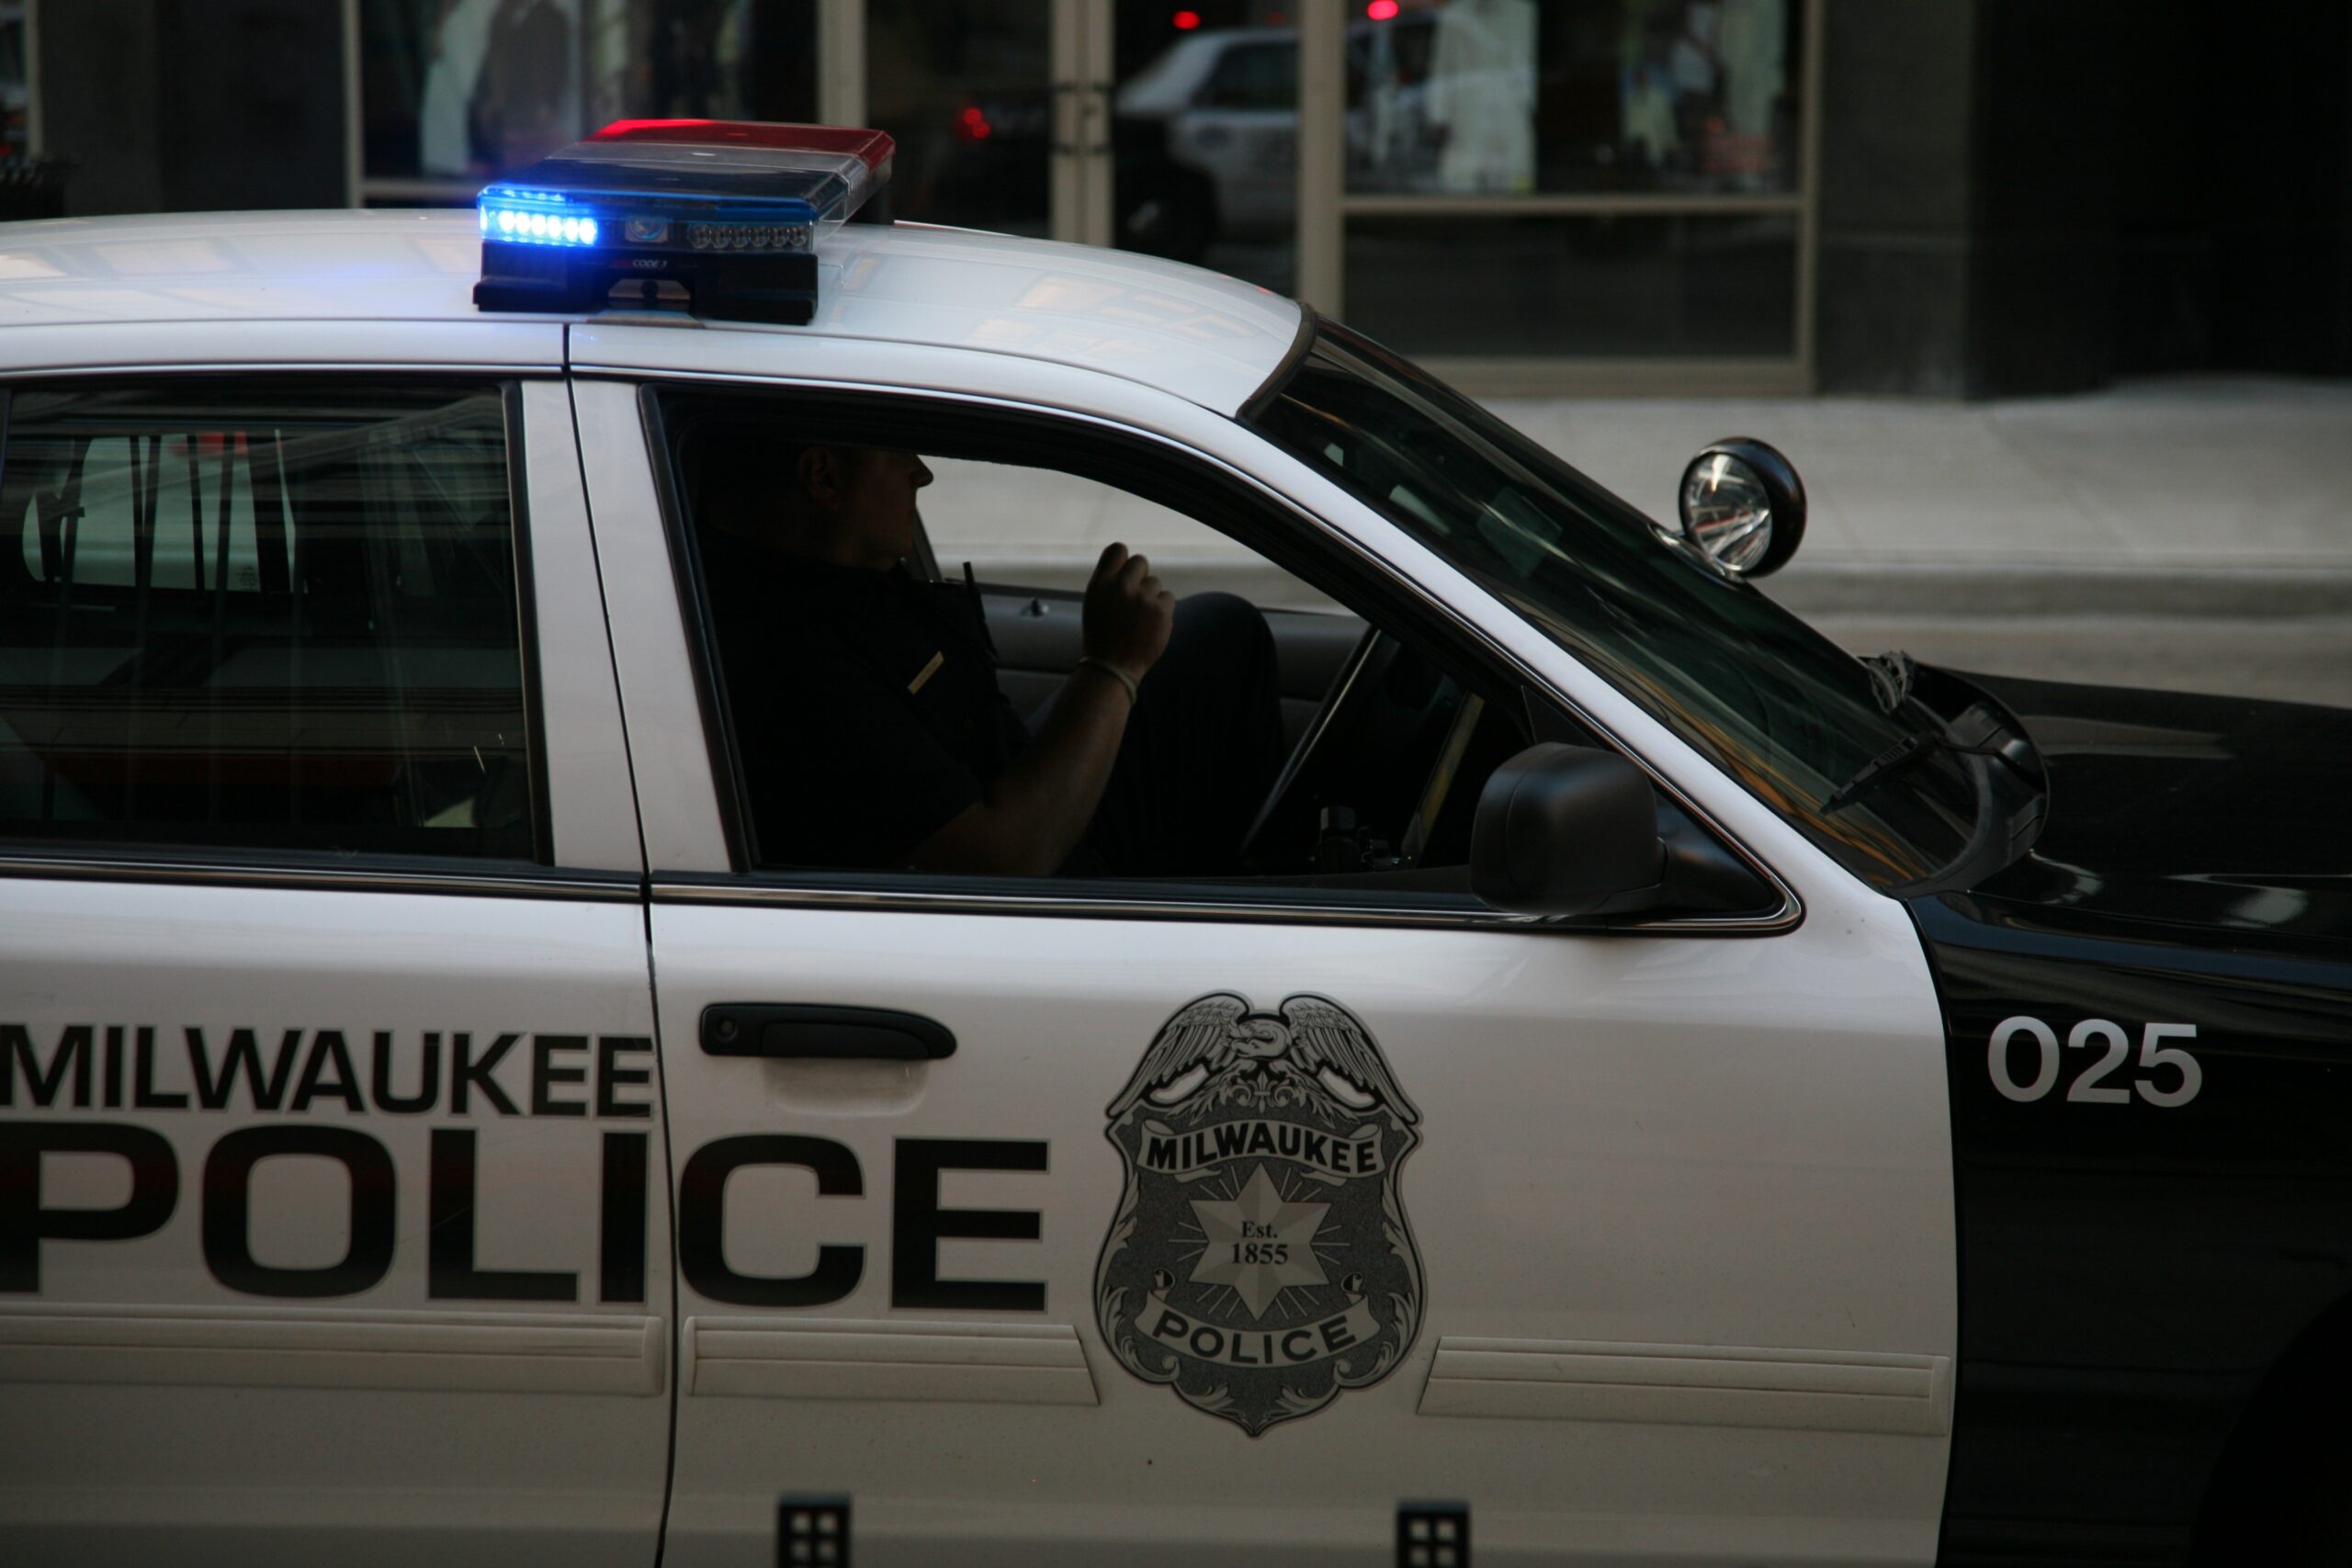 Milwaukee Police car